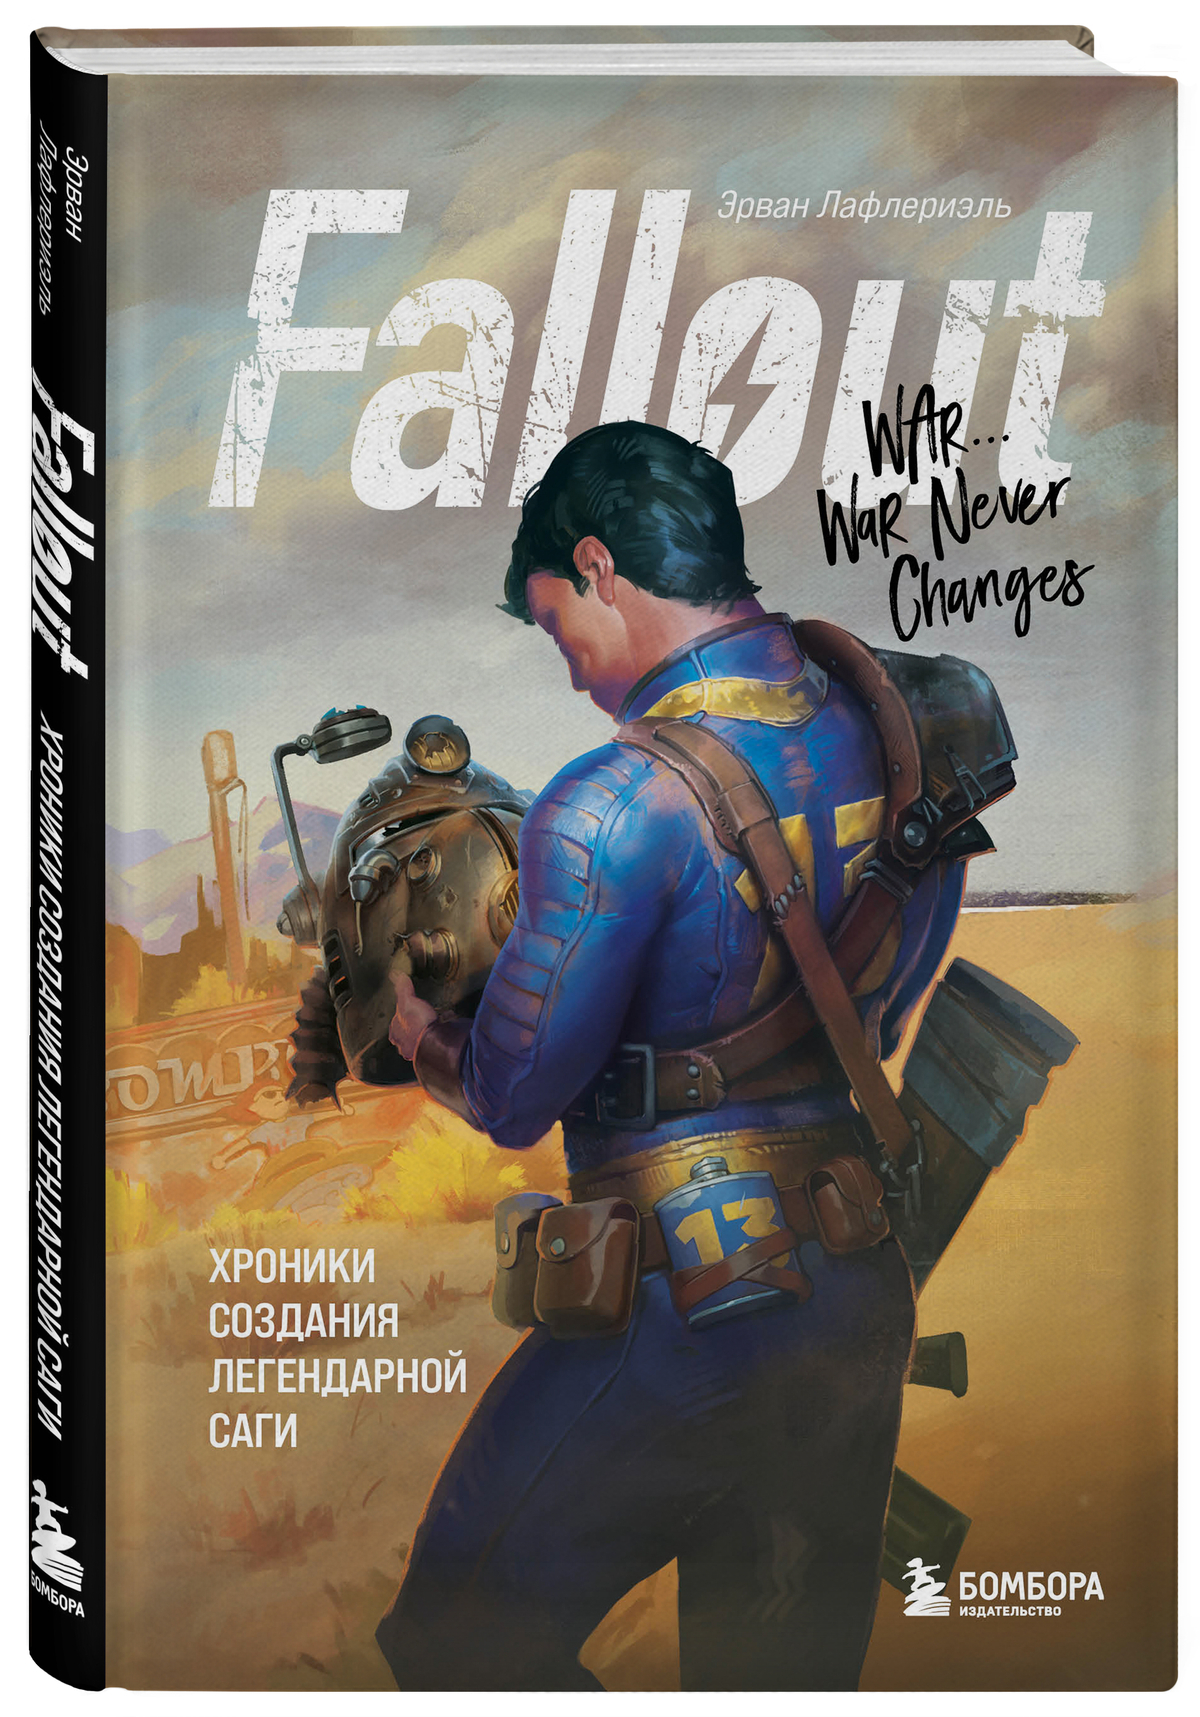 Издательство БОМБОРА представляет книгу Fallout. Хроники создания легендарной саги